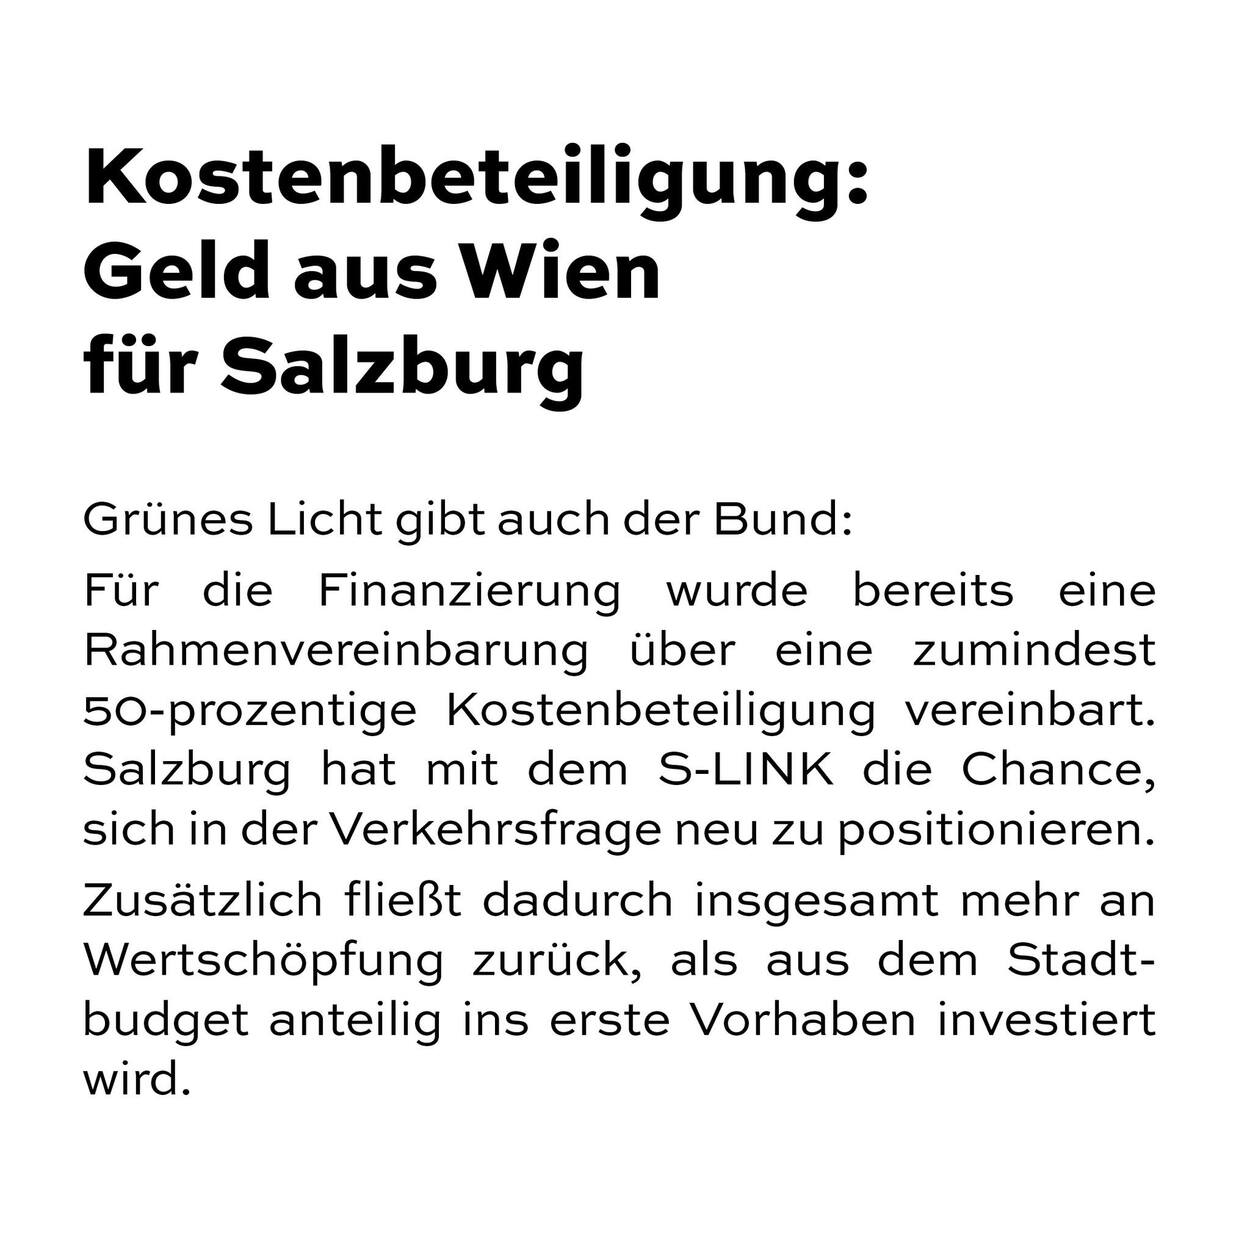 Kostenbeteiligung: Geld aus Wien für Salzburg